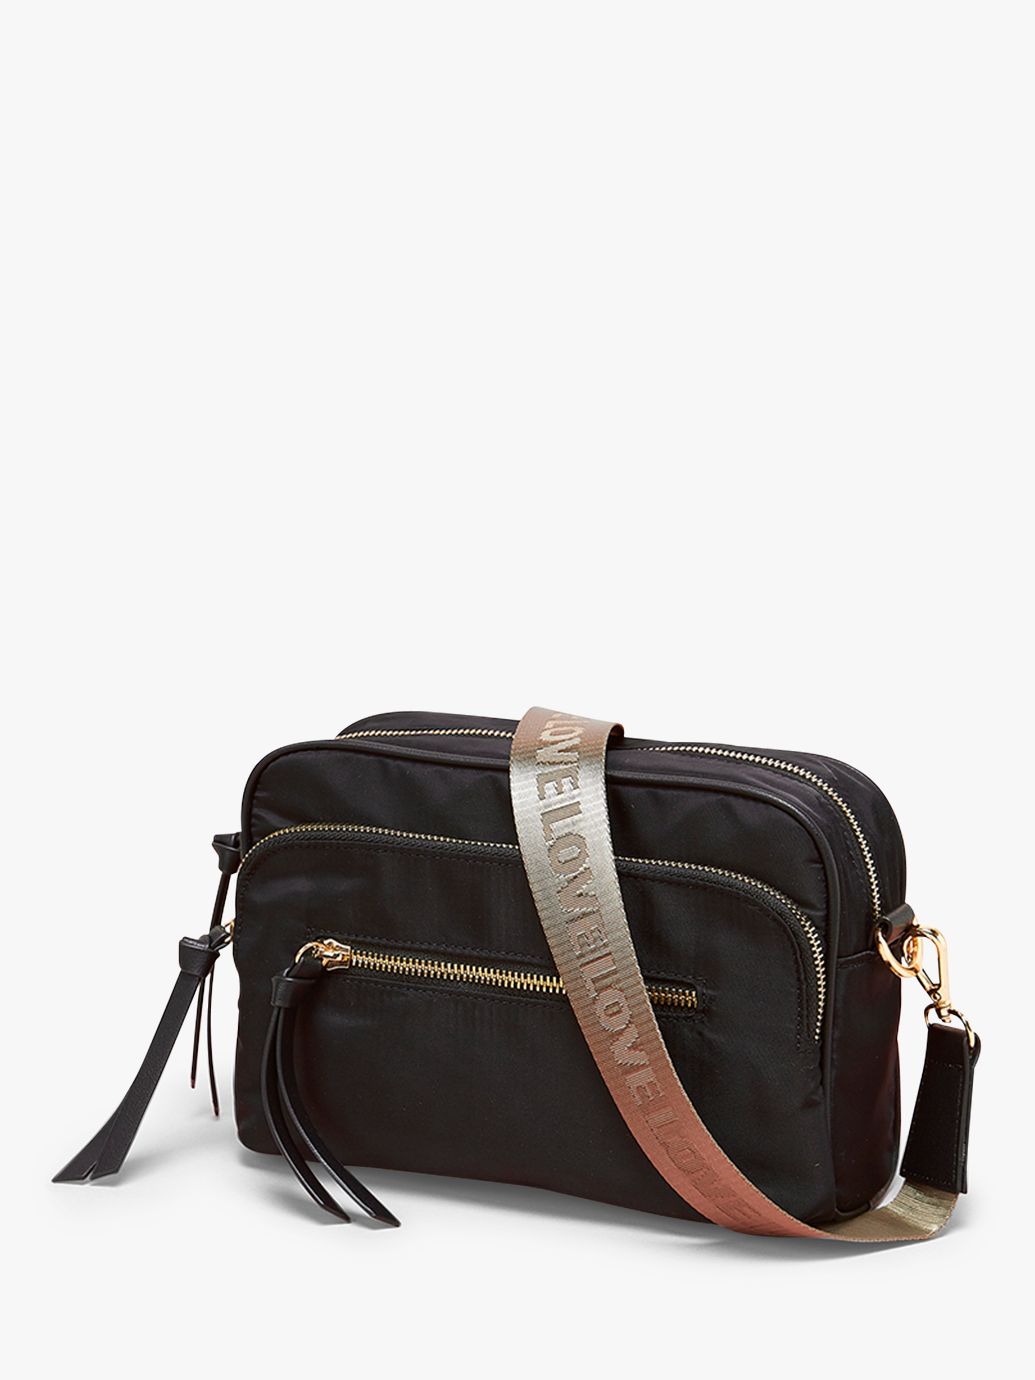 Mint Velvet Nylon Cross Body Bag, Black, One Size